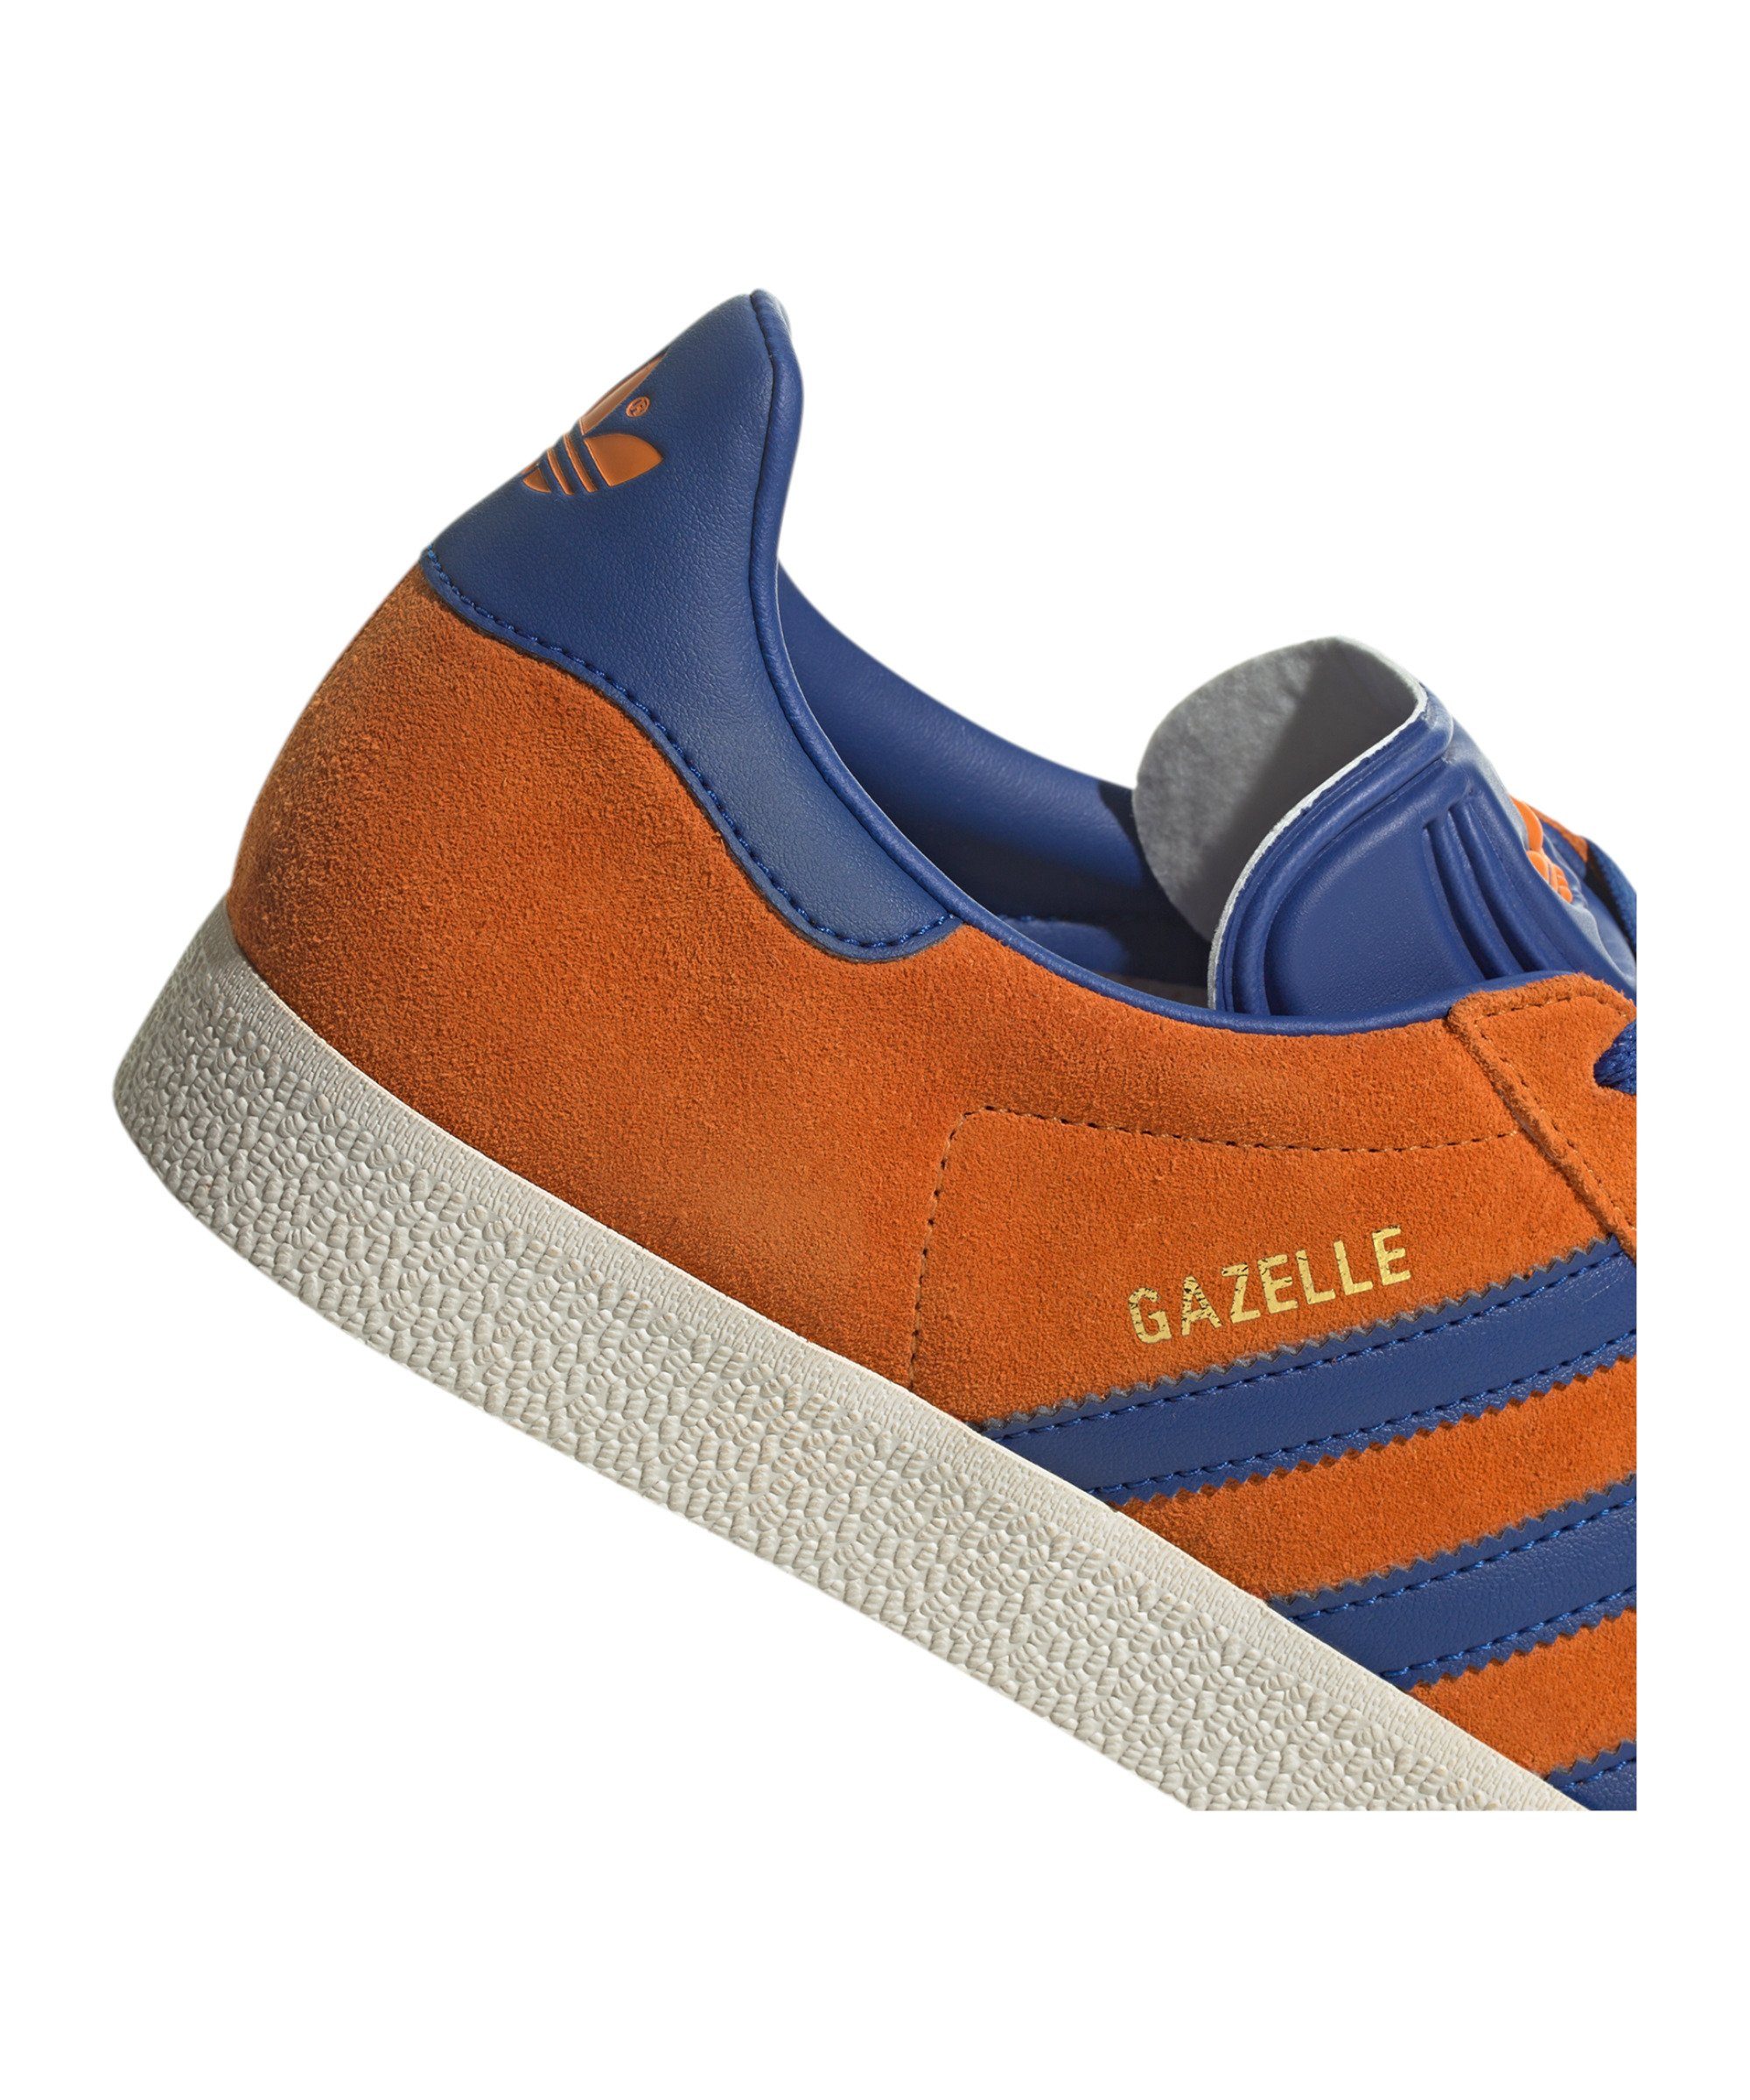 Gazelle orangeblauweiss Originals Sneaker adidas